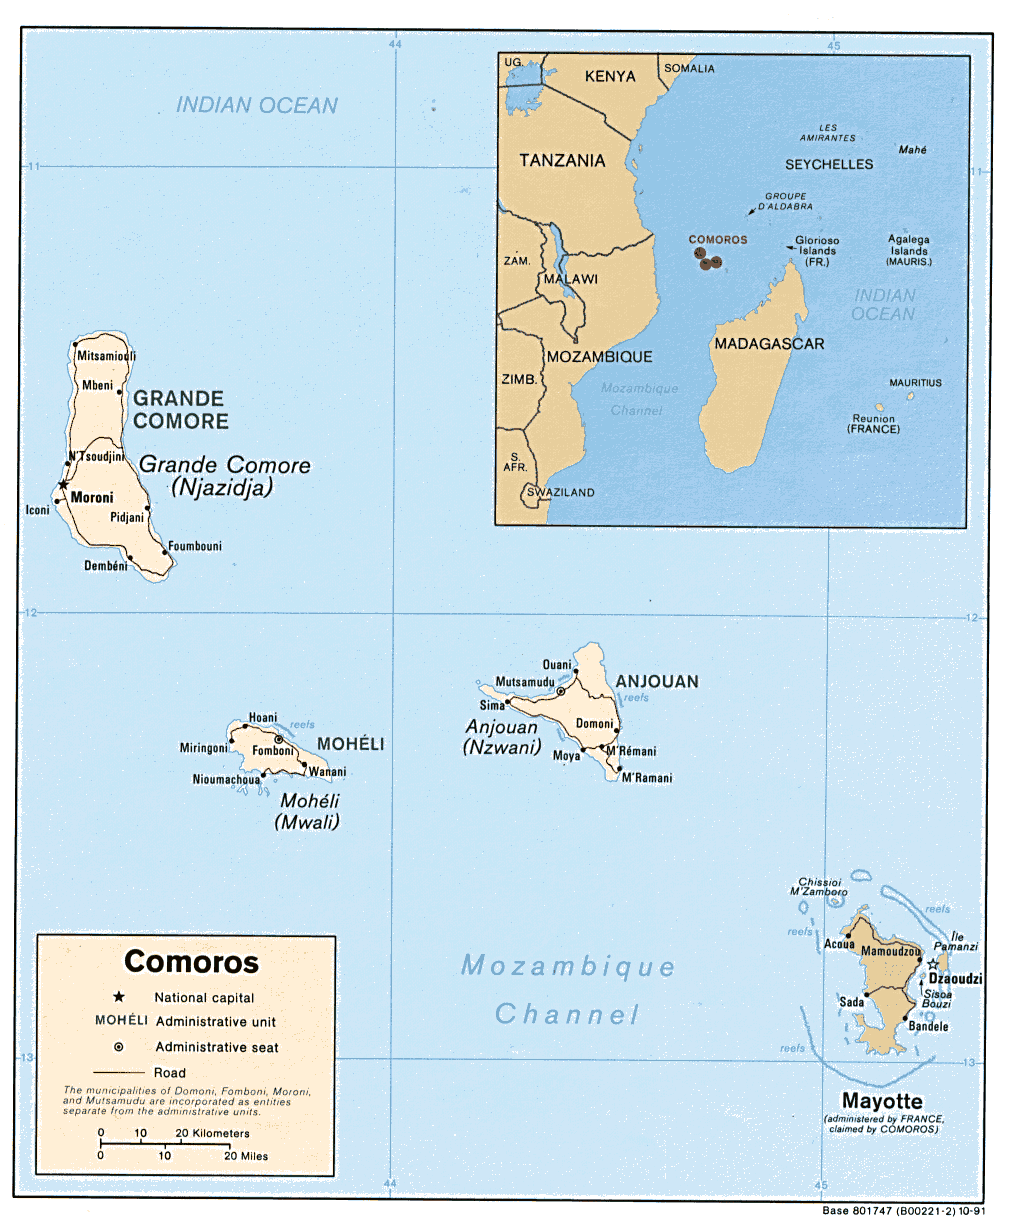 Comoros (Political) 1991